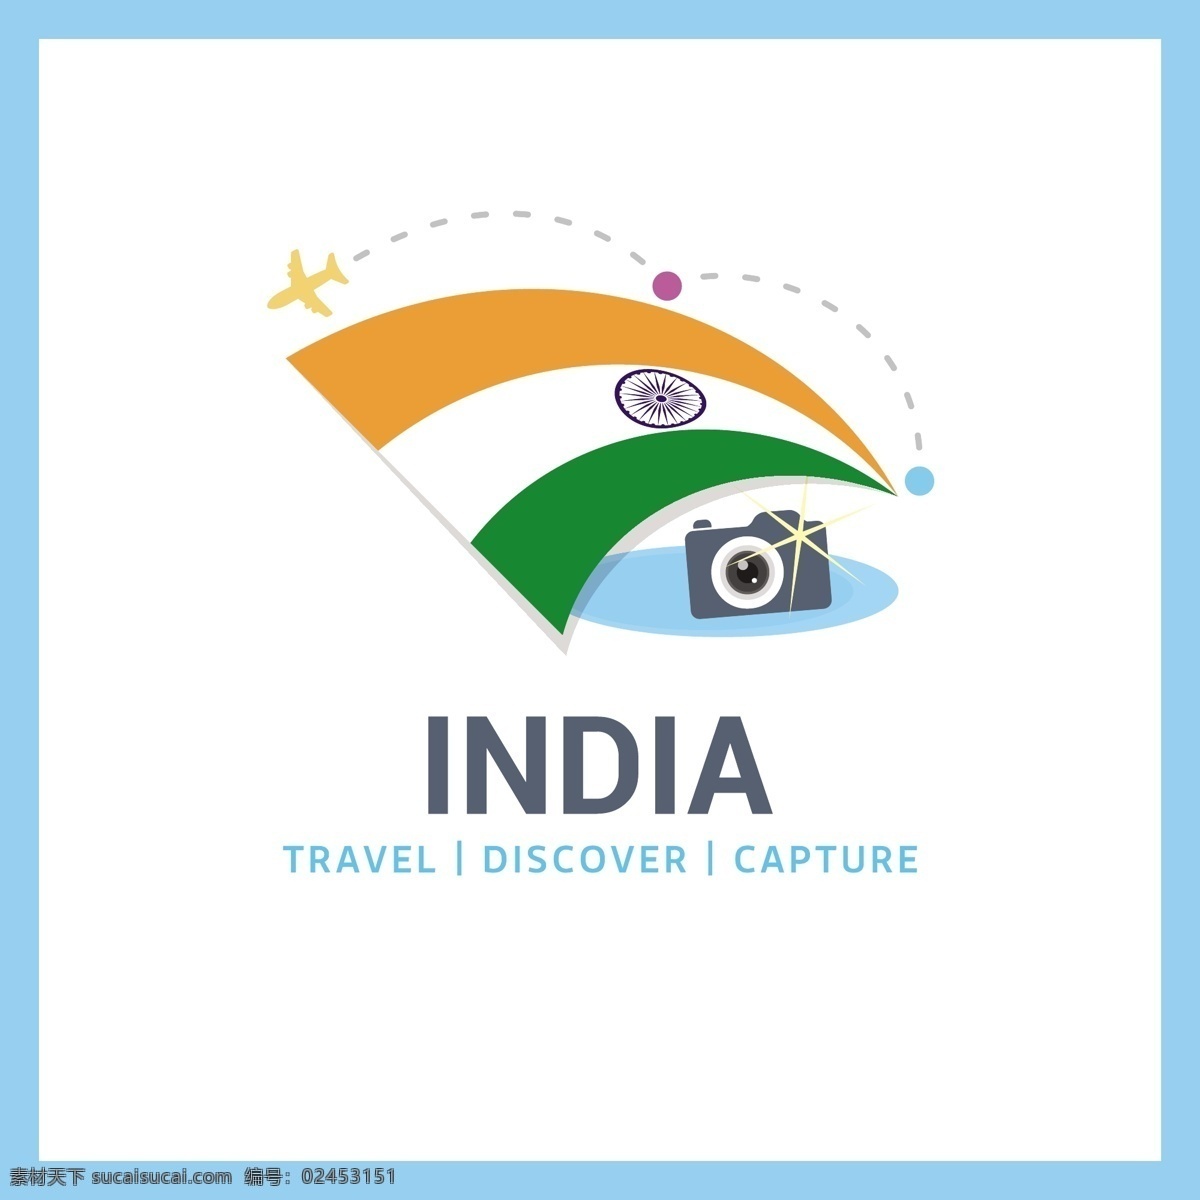 去印度旅行 背景 标志 标签 旅行 徽章 地图 世界 国旗 印度 徽 旅游 度假 法国 大 下 行李 发现 在世界范围内 捕捉 公民